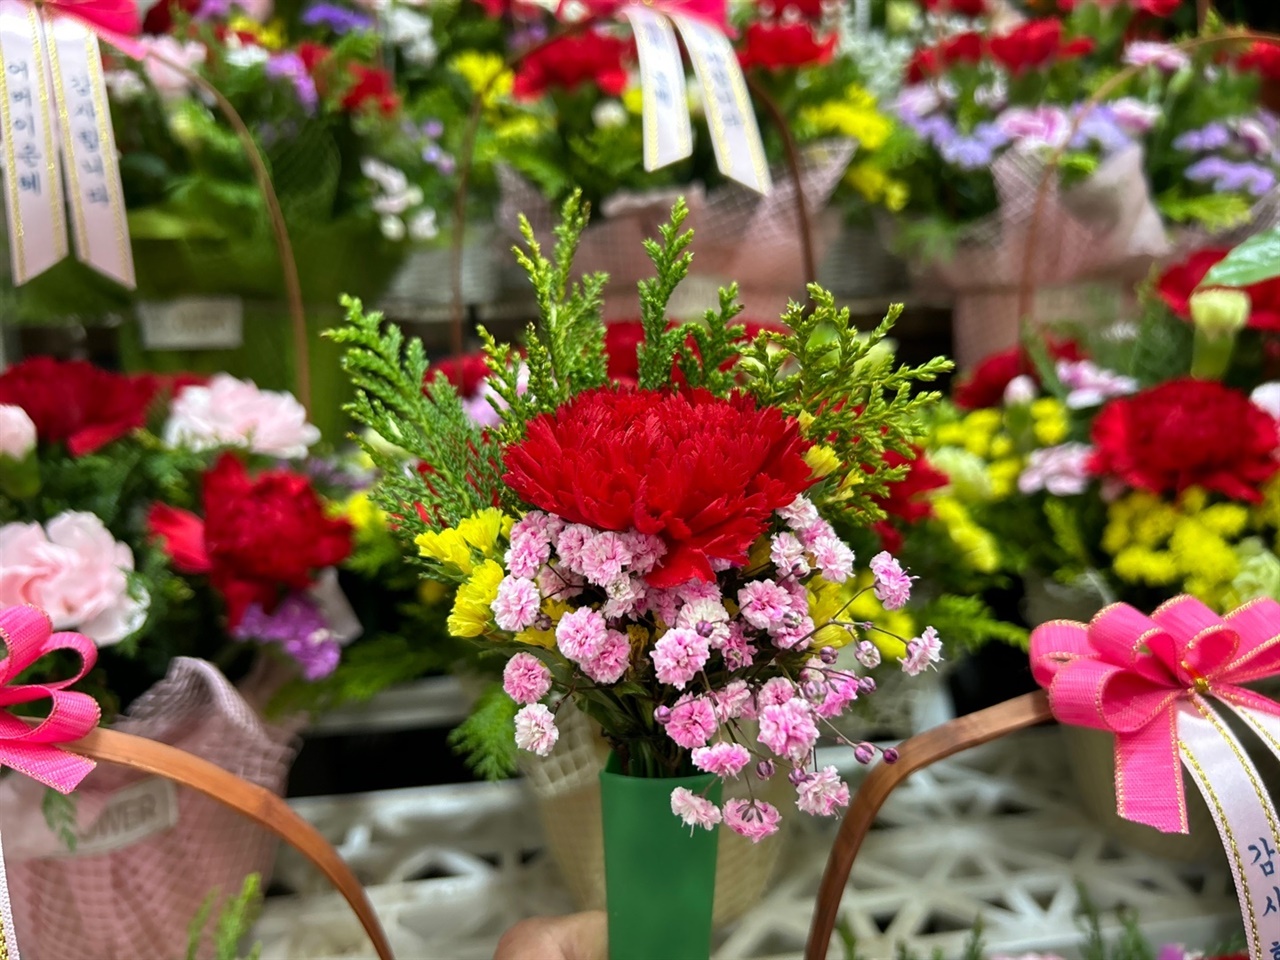 어버이날을 하루 앞두고 꽃집은 분주하다. 꽃집마다 카네이션 화분과 가슴꽃을 내놓고 손님들을 기다리고 있다.